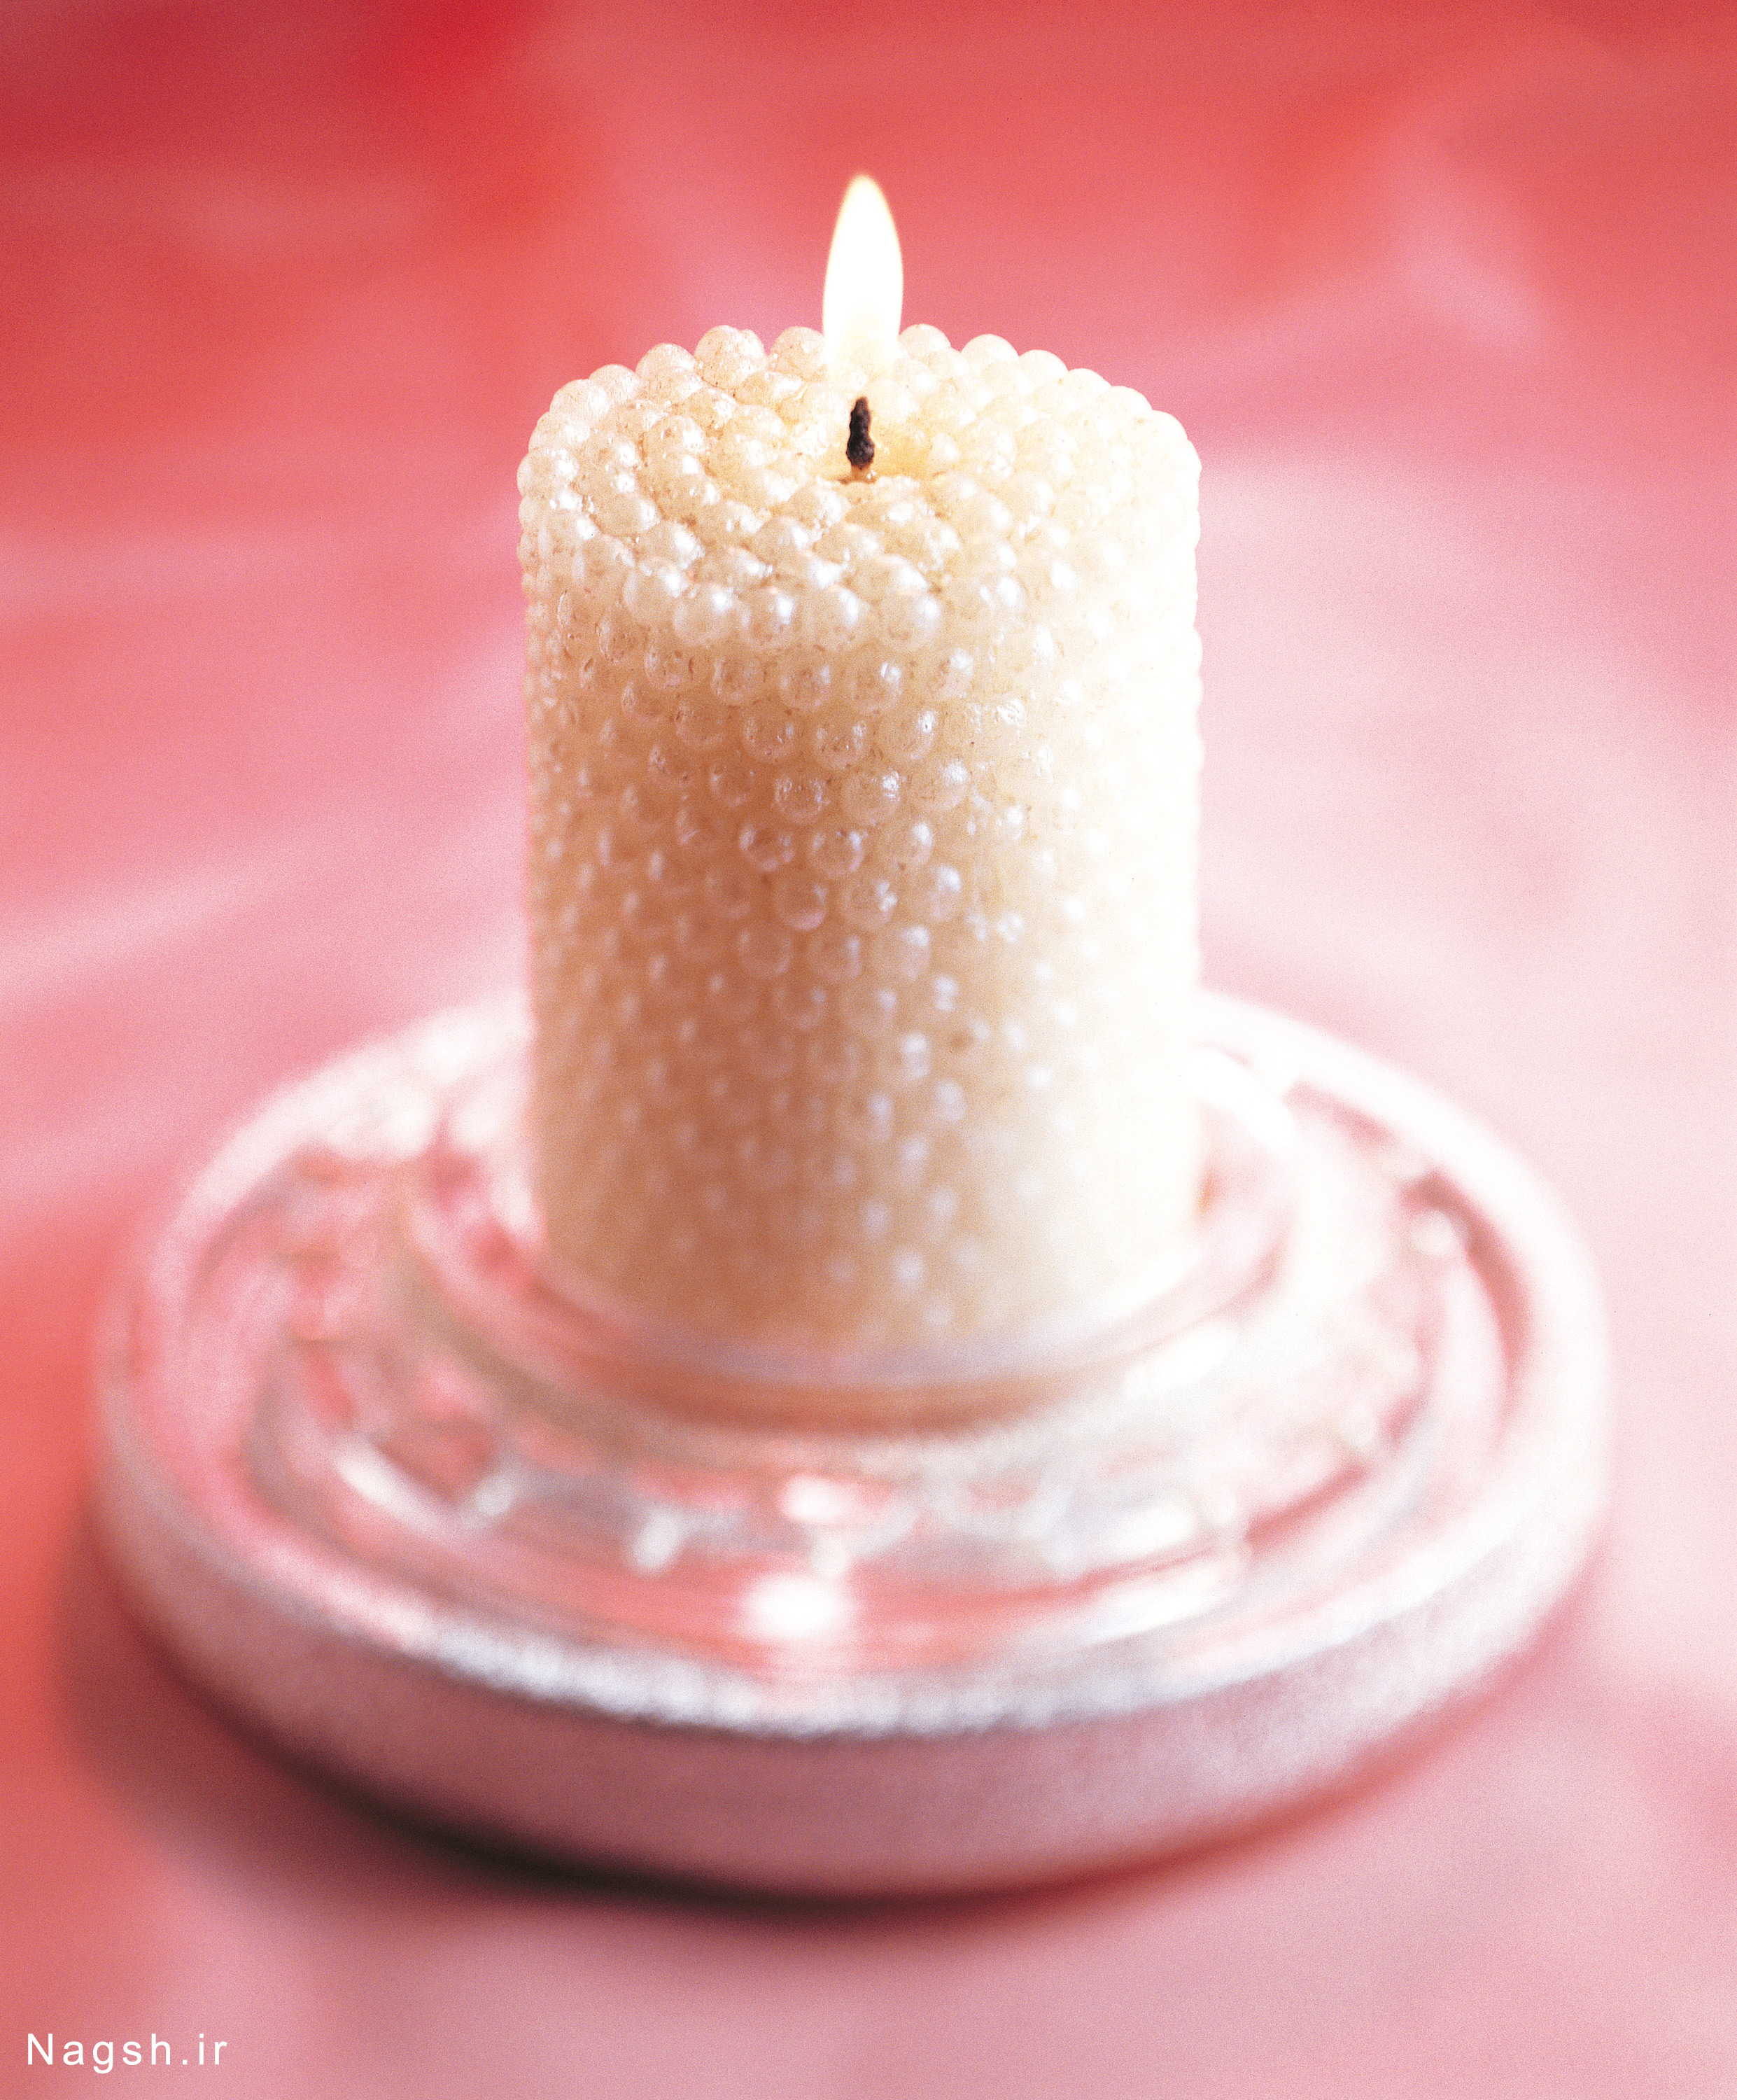 شمع تزیین شده با مروارید